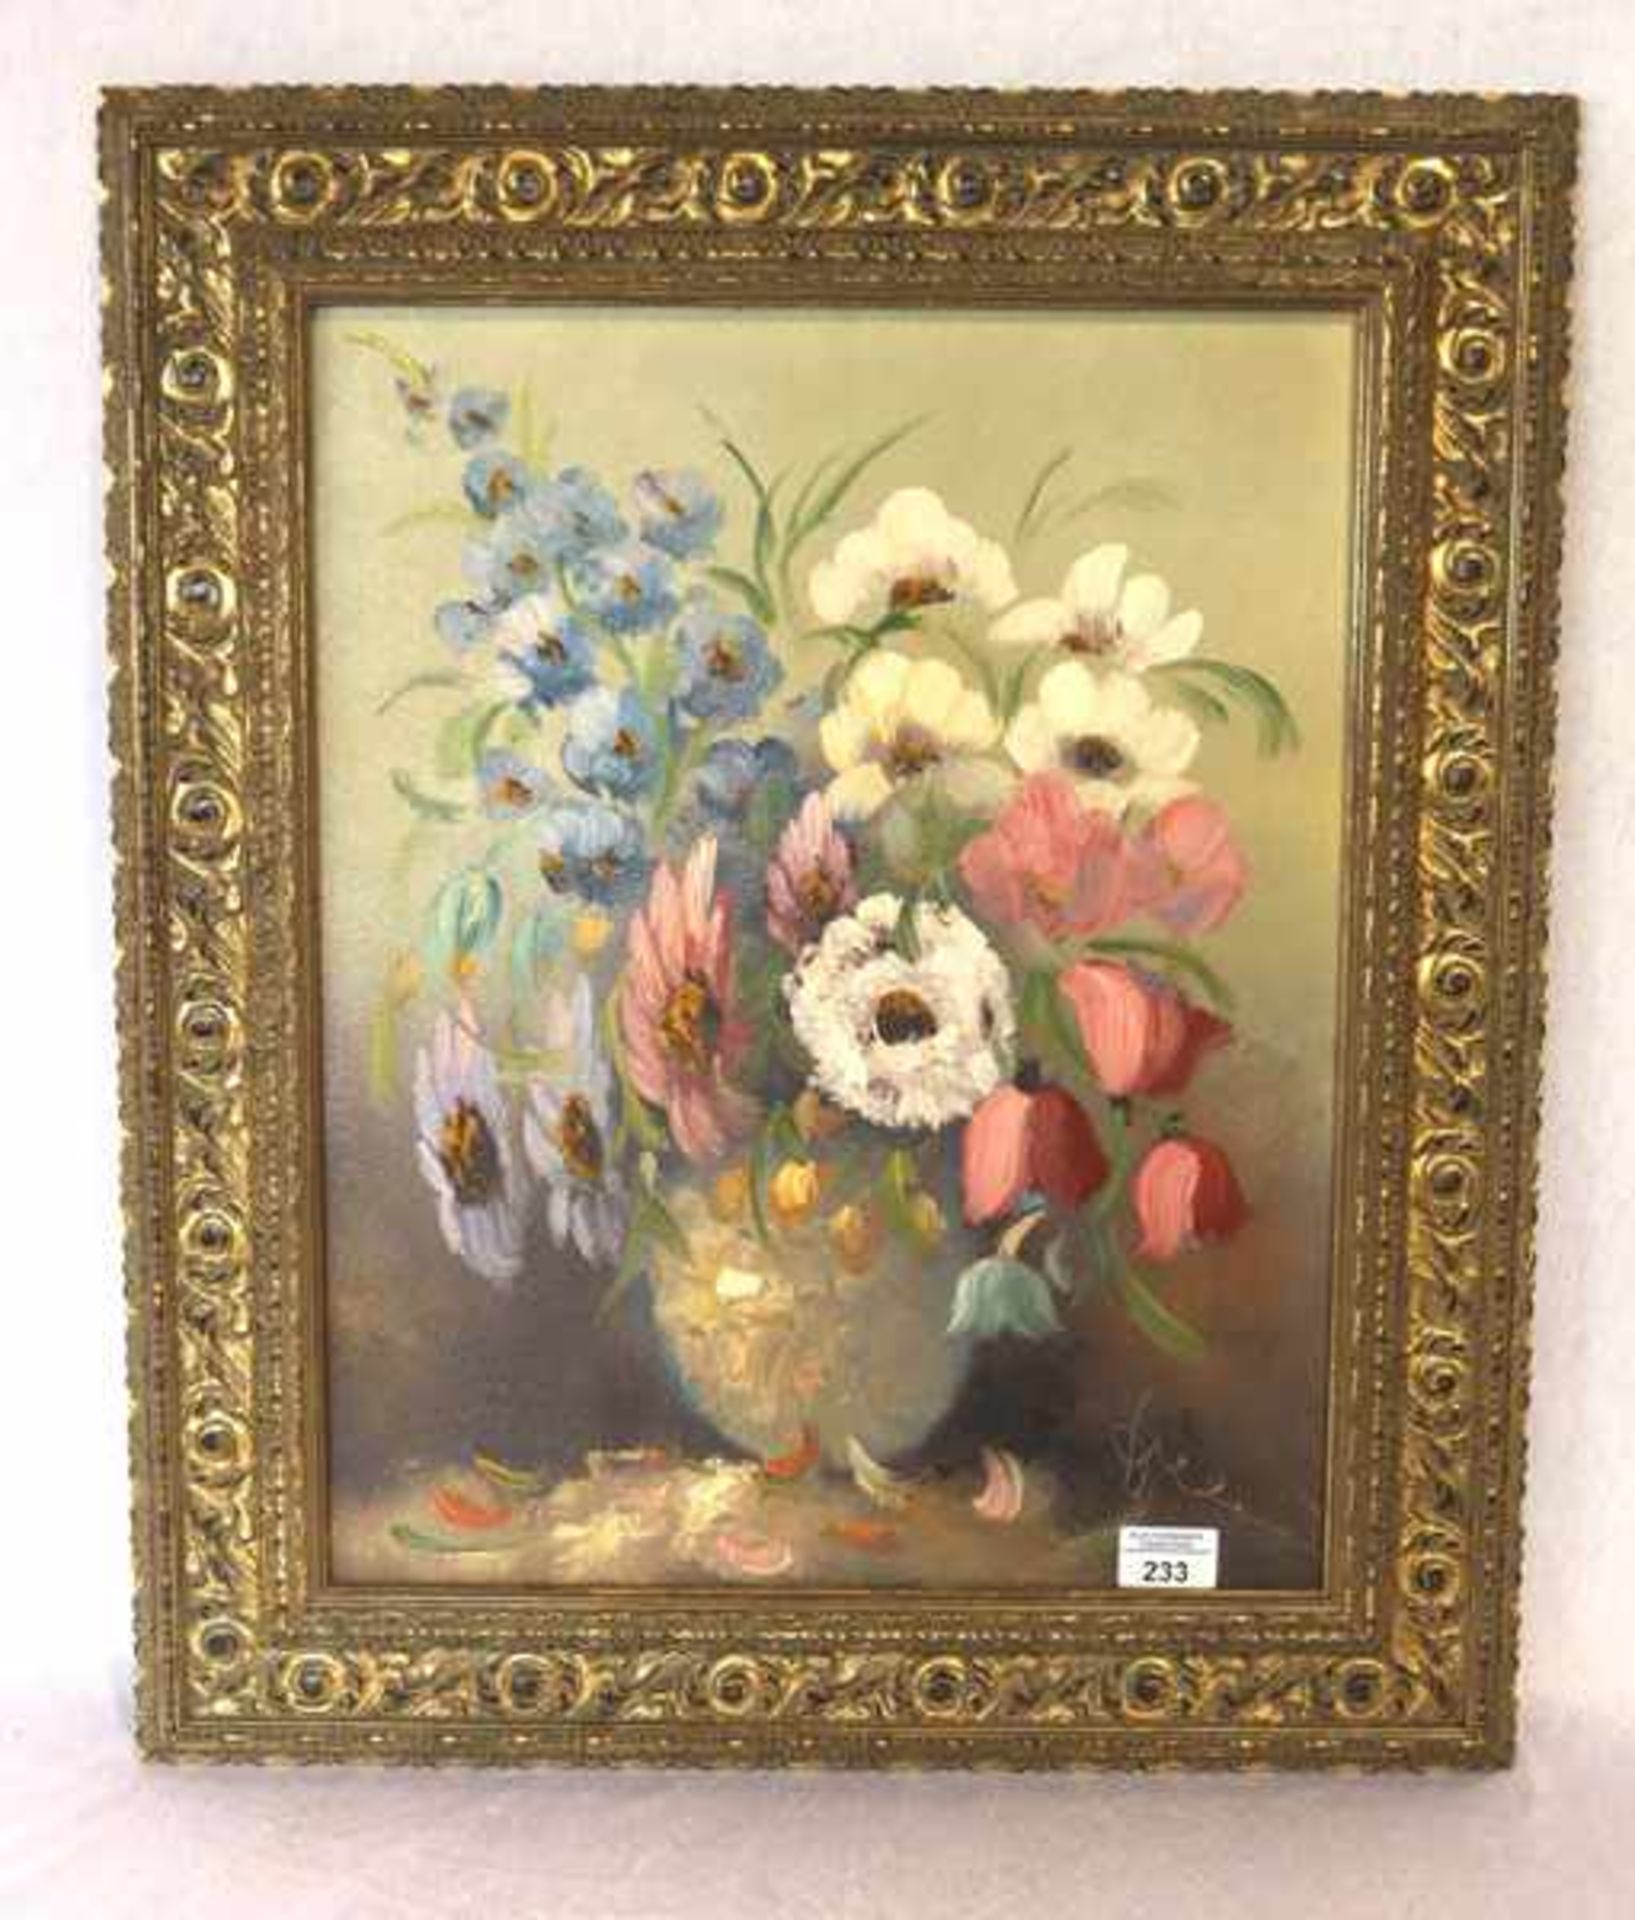 Gemälde ÖL/LW 'Blumenstillleben in Vase', undeutlich signiert, LW hat kleinen Riß, geklebt, gerahmt,